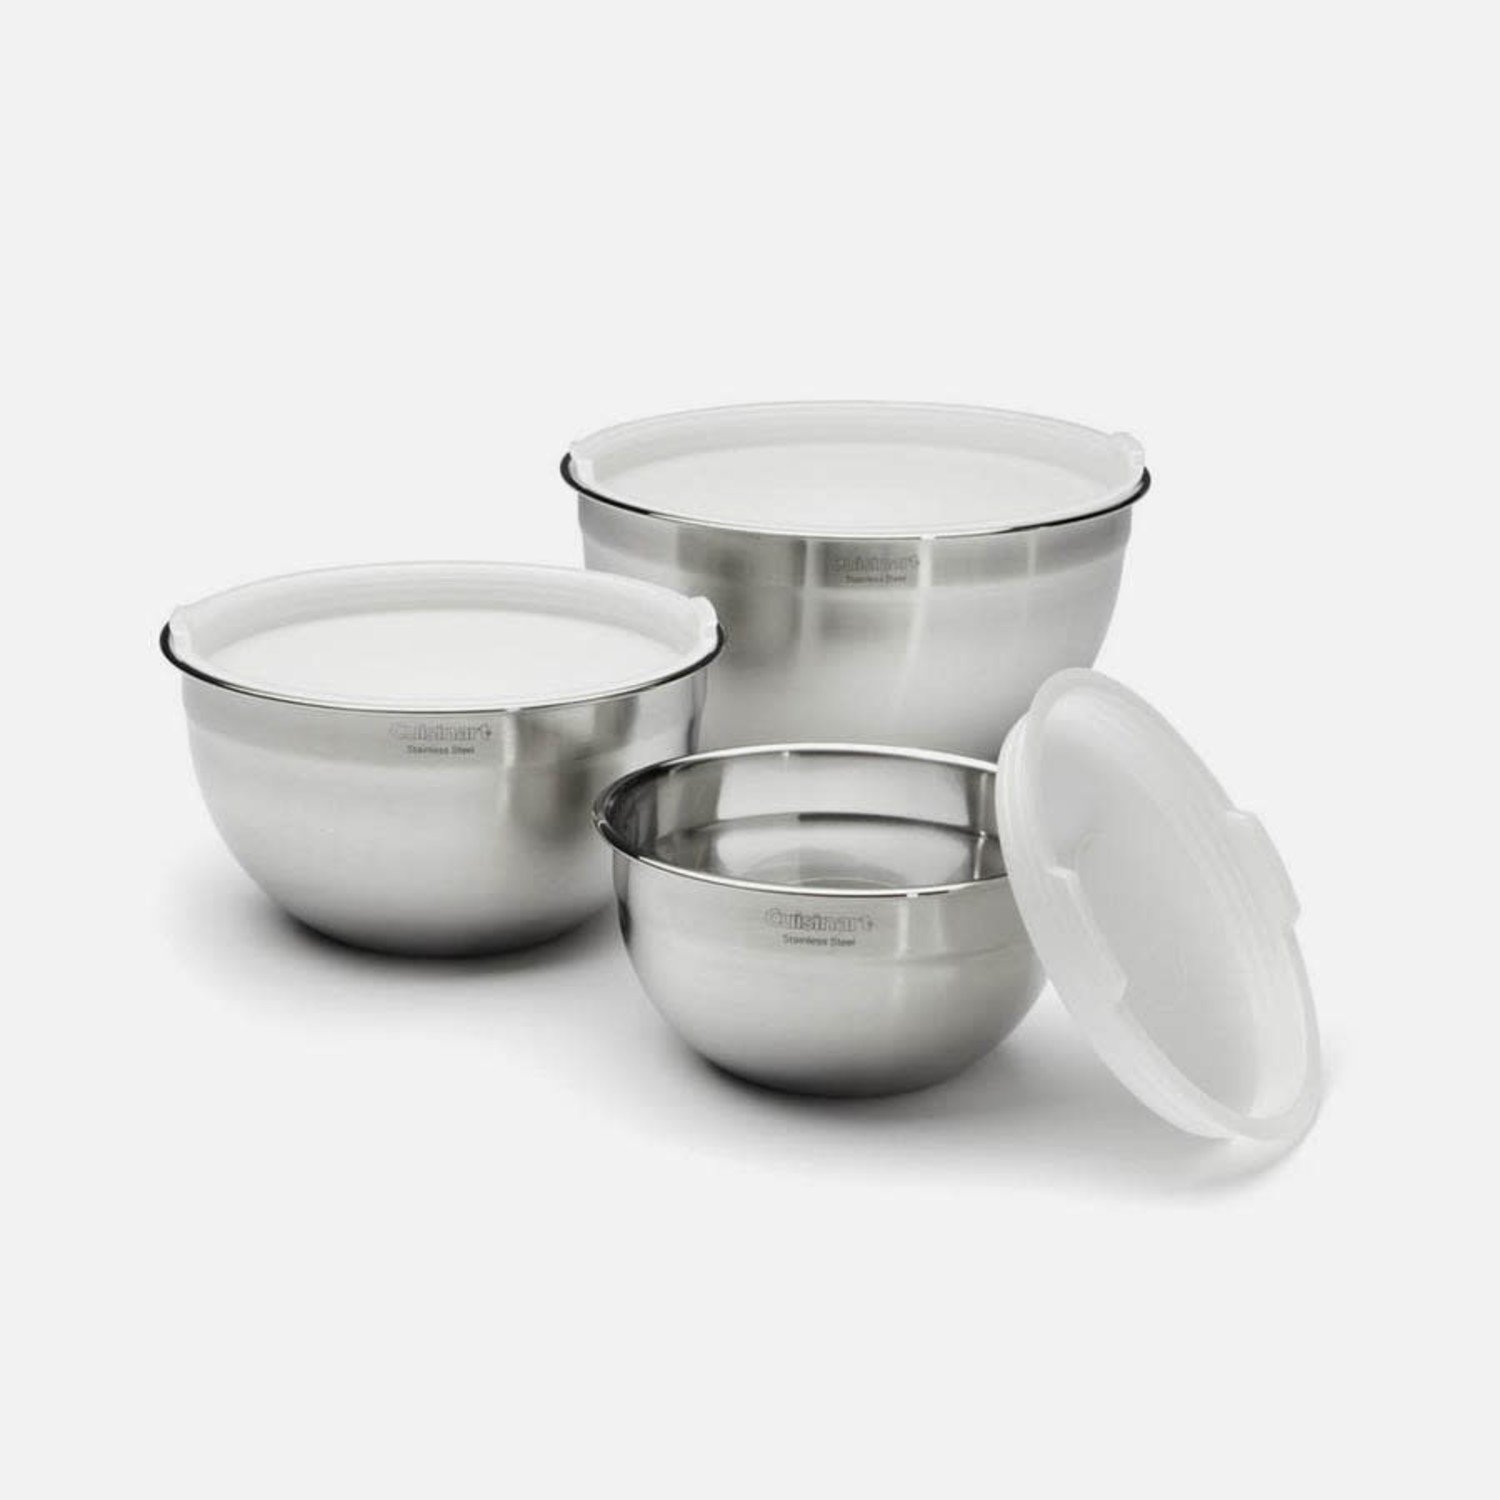 https://cdn.shoplightspeed.com/shops/633447/files/22210421/1500x4000x3/cuisinart-cuisinart-stainless-steel-mixing-bowls-w.jpg